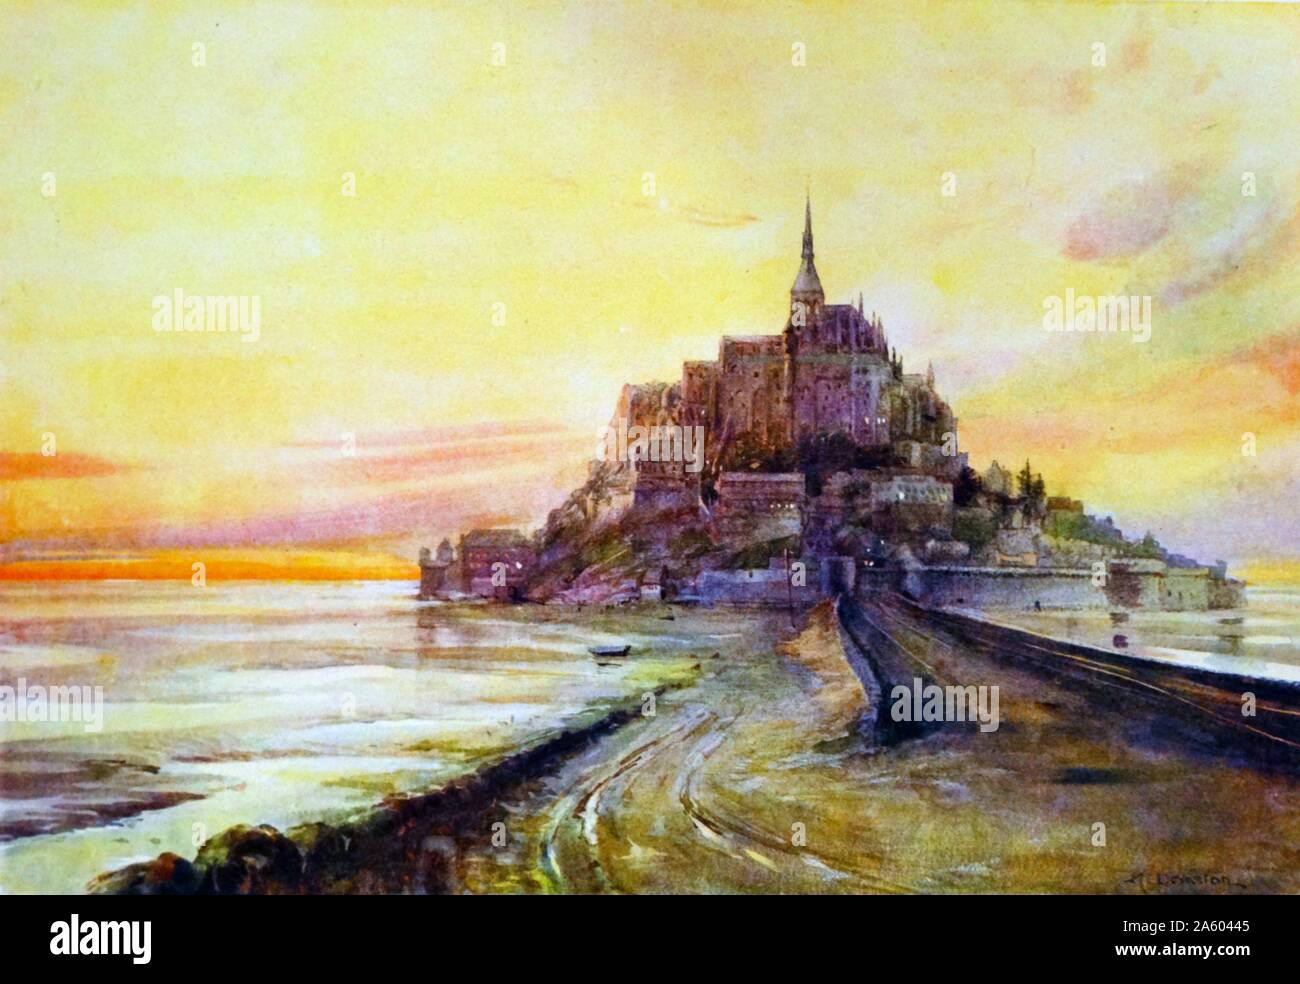 Der Mont Saint Michel Abbey von Margaret Dovaston (1884-1955), britischer Maler Gemälde. Mont Saint Michel Abbey befindet sich in der Stadt und die Insel von Mont Saint-Michel in Basse-Normandie im Département Manche, die im 16. Jahrhundert vollendet. Stockfoto